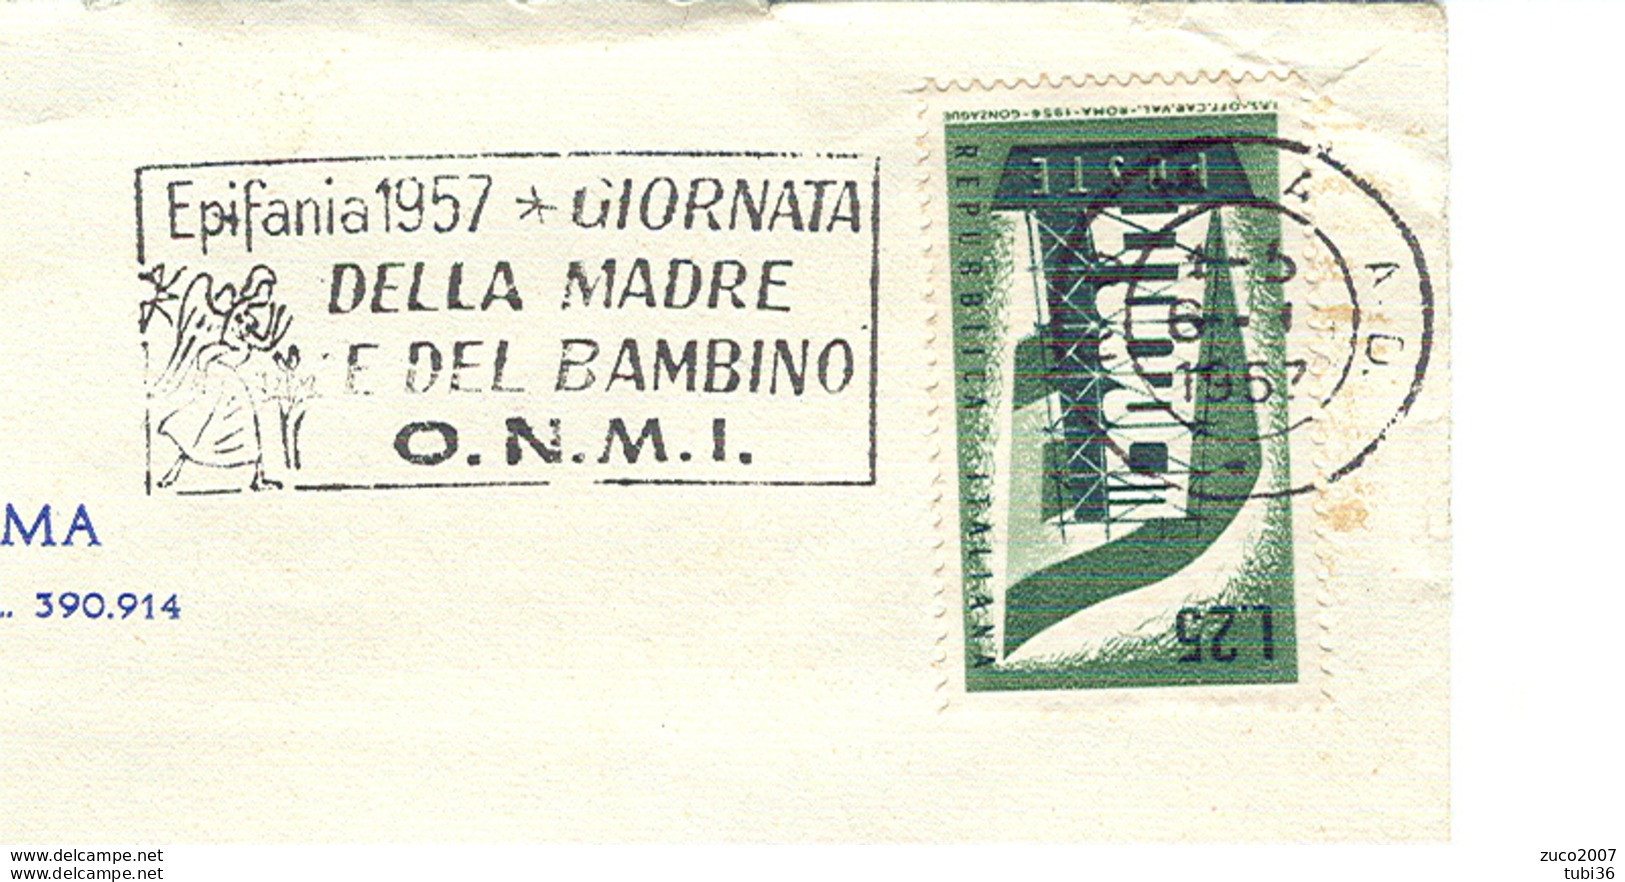 EPIFANIA 1957, GIORNATA DELLA MADRE E DEL BAMBINO- O.N.M.I.- TIMBRO POSTE ROMA TARGHETTA,1957,CIRCOLO CANOTTIERI,ROMA, - Día De La Madre